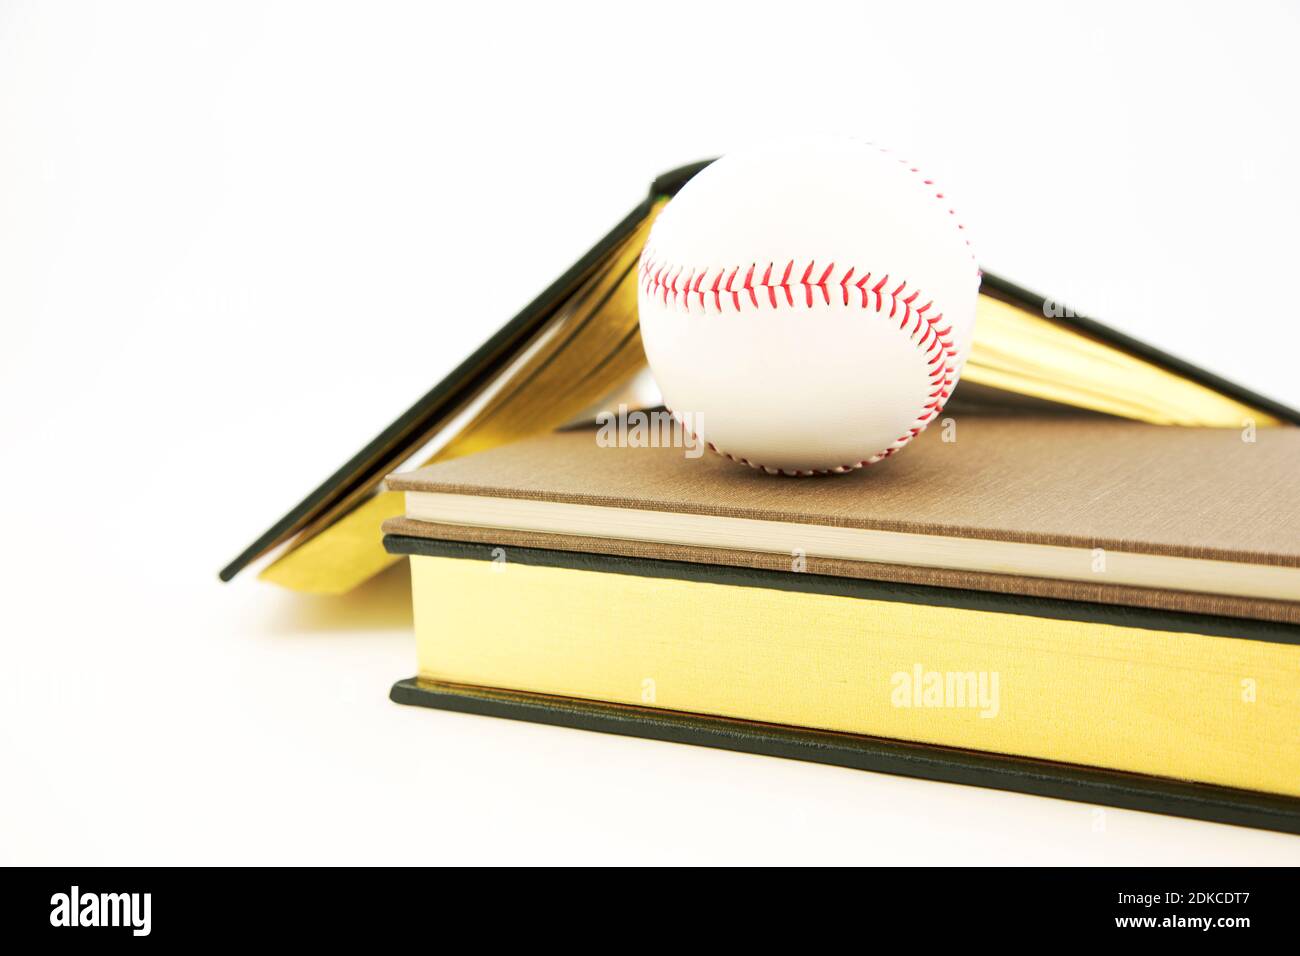 Atleta studioso e integrazione di accademici e sport visti in la natura concettuale dei libri e del baseball su sfondo bianco Foto Stock